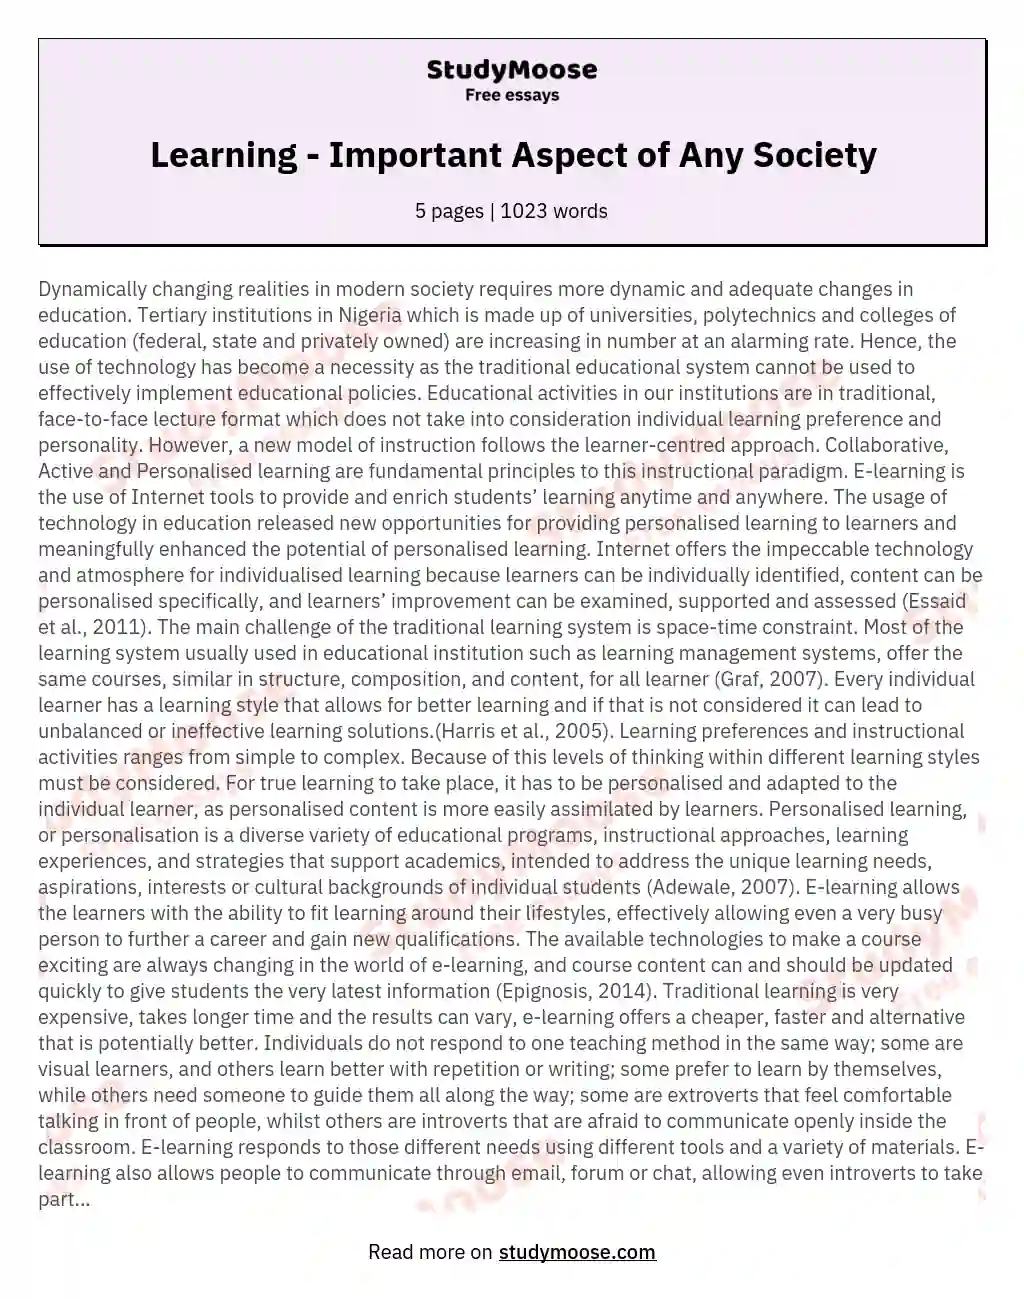 Learning - Important Aspect of Any Society essay